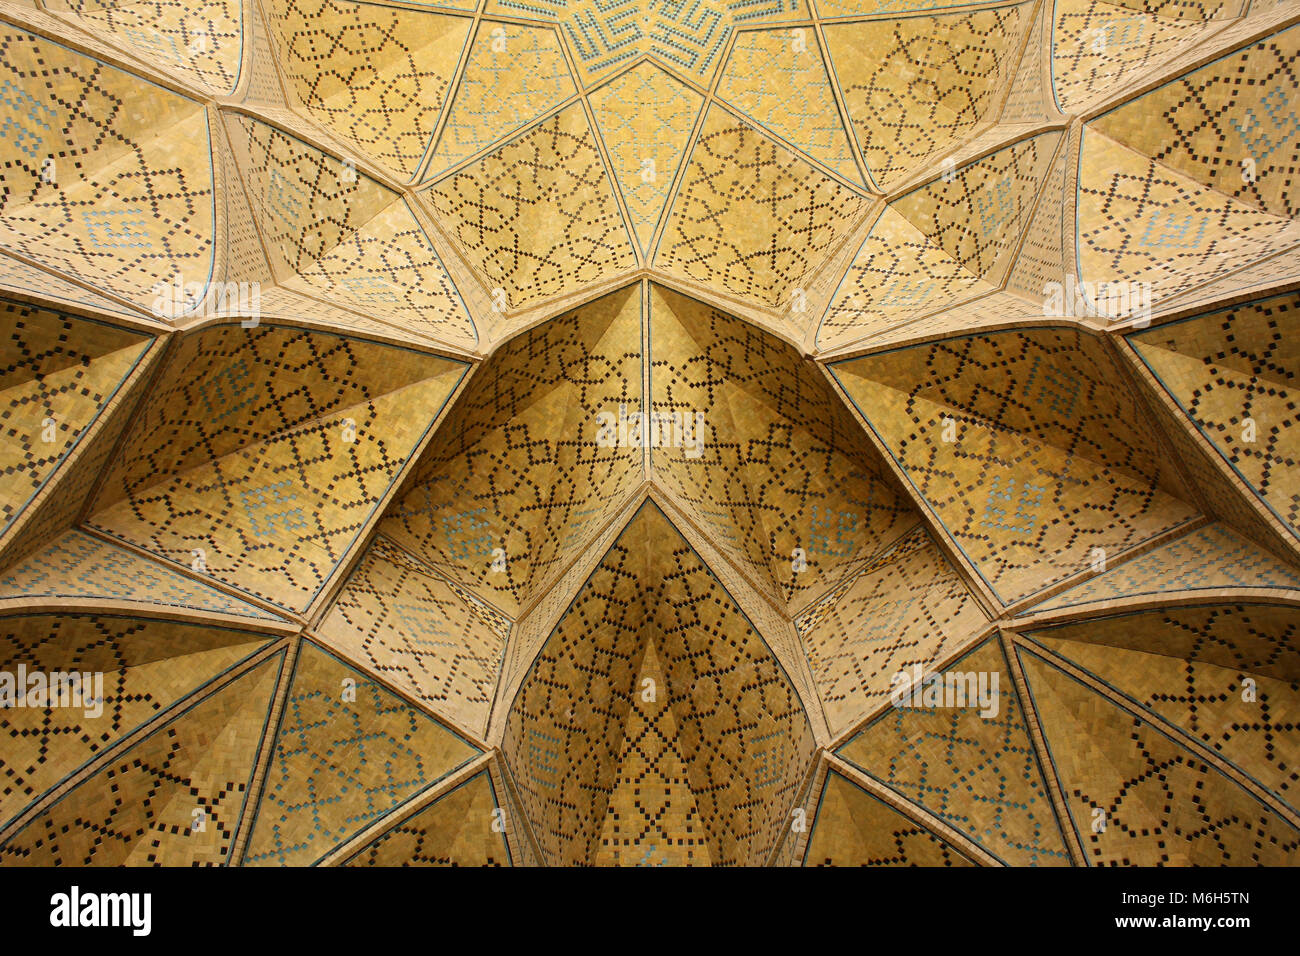 De façon complexe et magnifiquement décorée dans des tons chauds de jaune au plafond avec des tons de bleu dans une mosquée musulmane à Esfahan / Isfahan, Iran. Banque D'Images